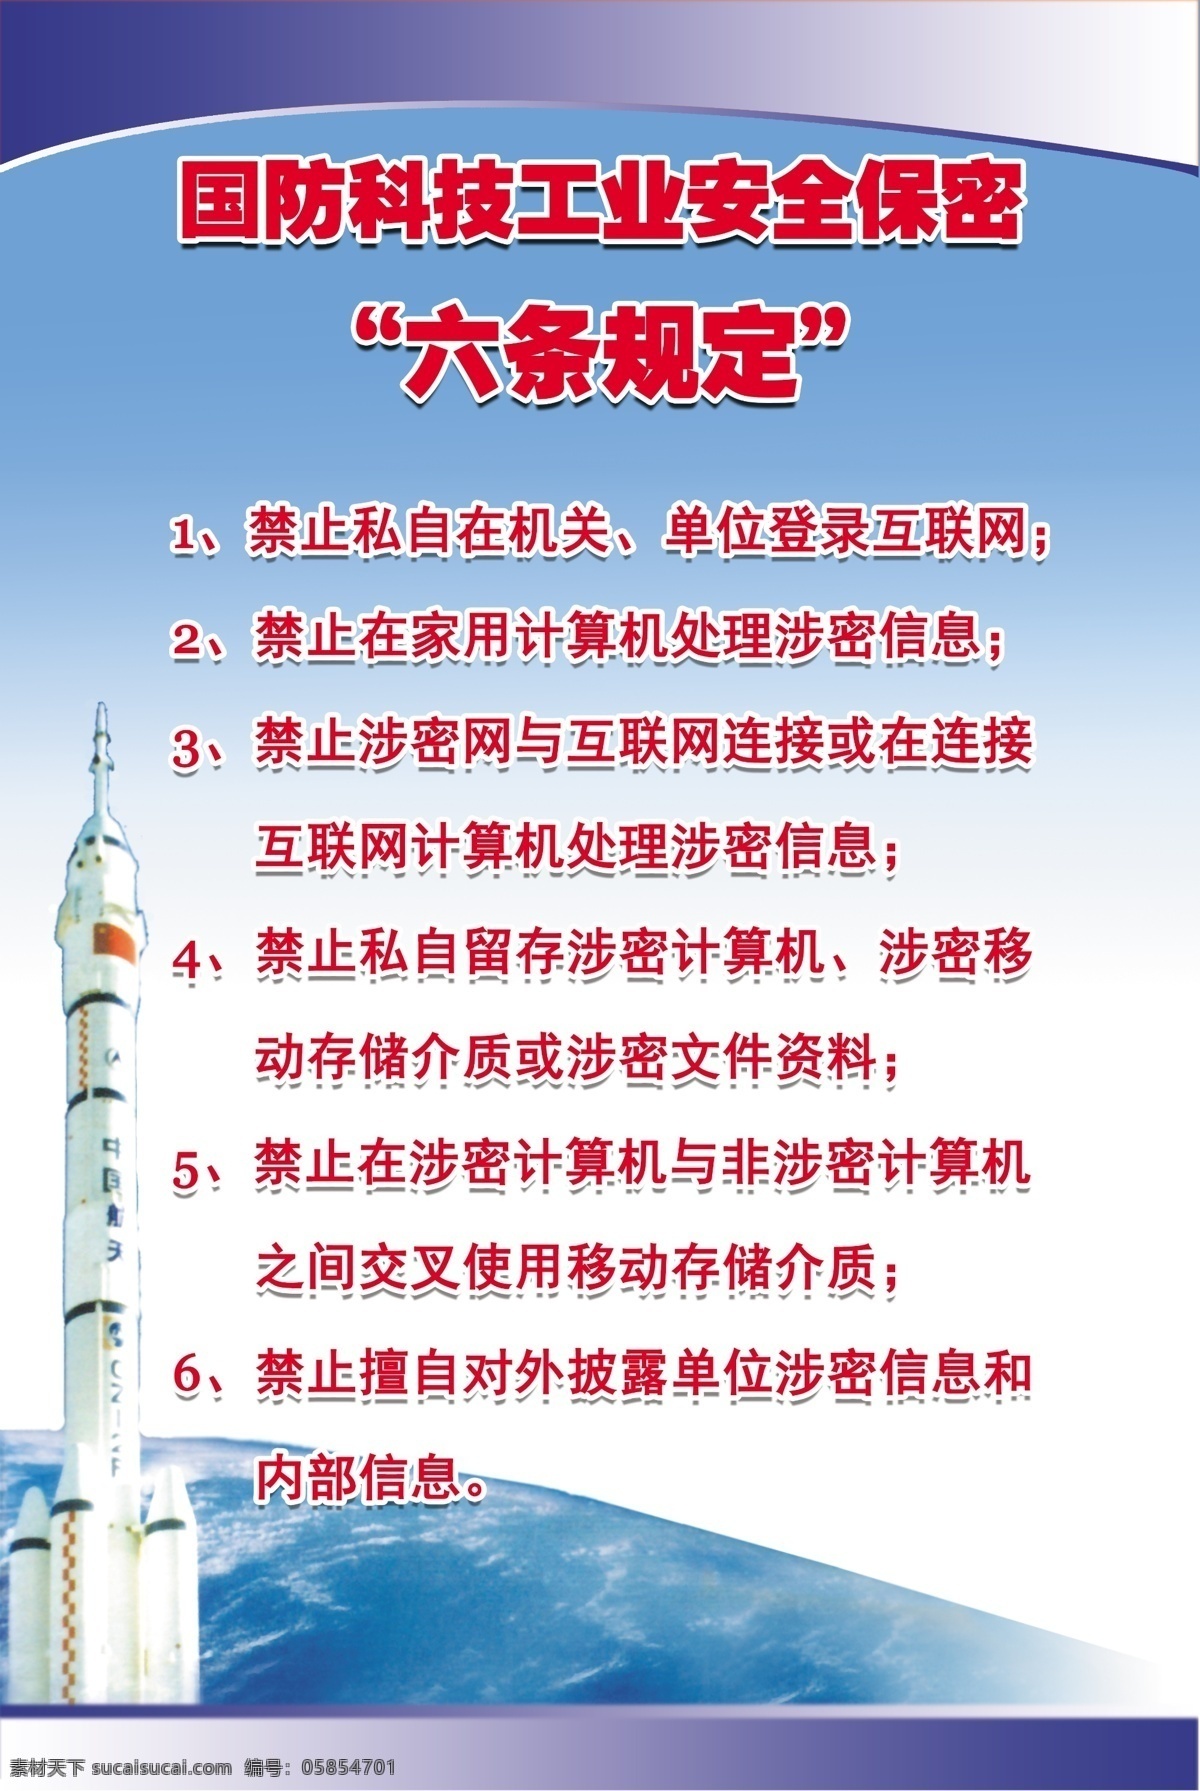 国防科技 工业 安全 保密 六 条规 定 火箭 月球 六条规定 蔚蓝的天空 分层 源文件